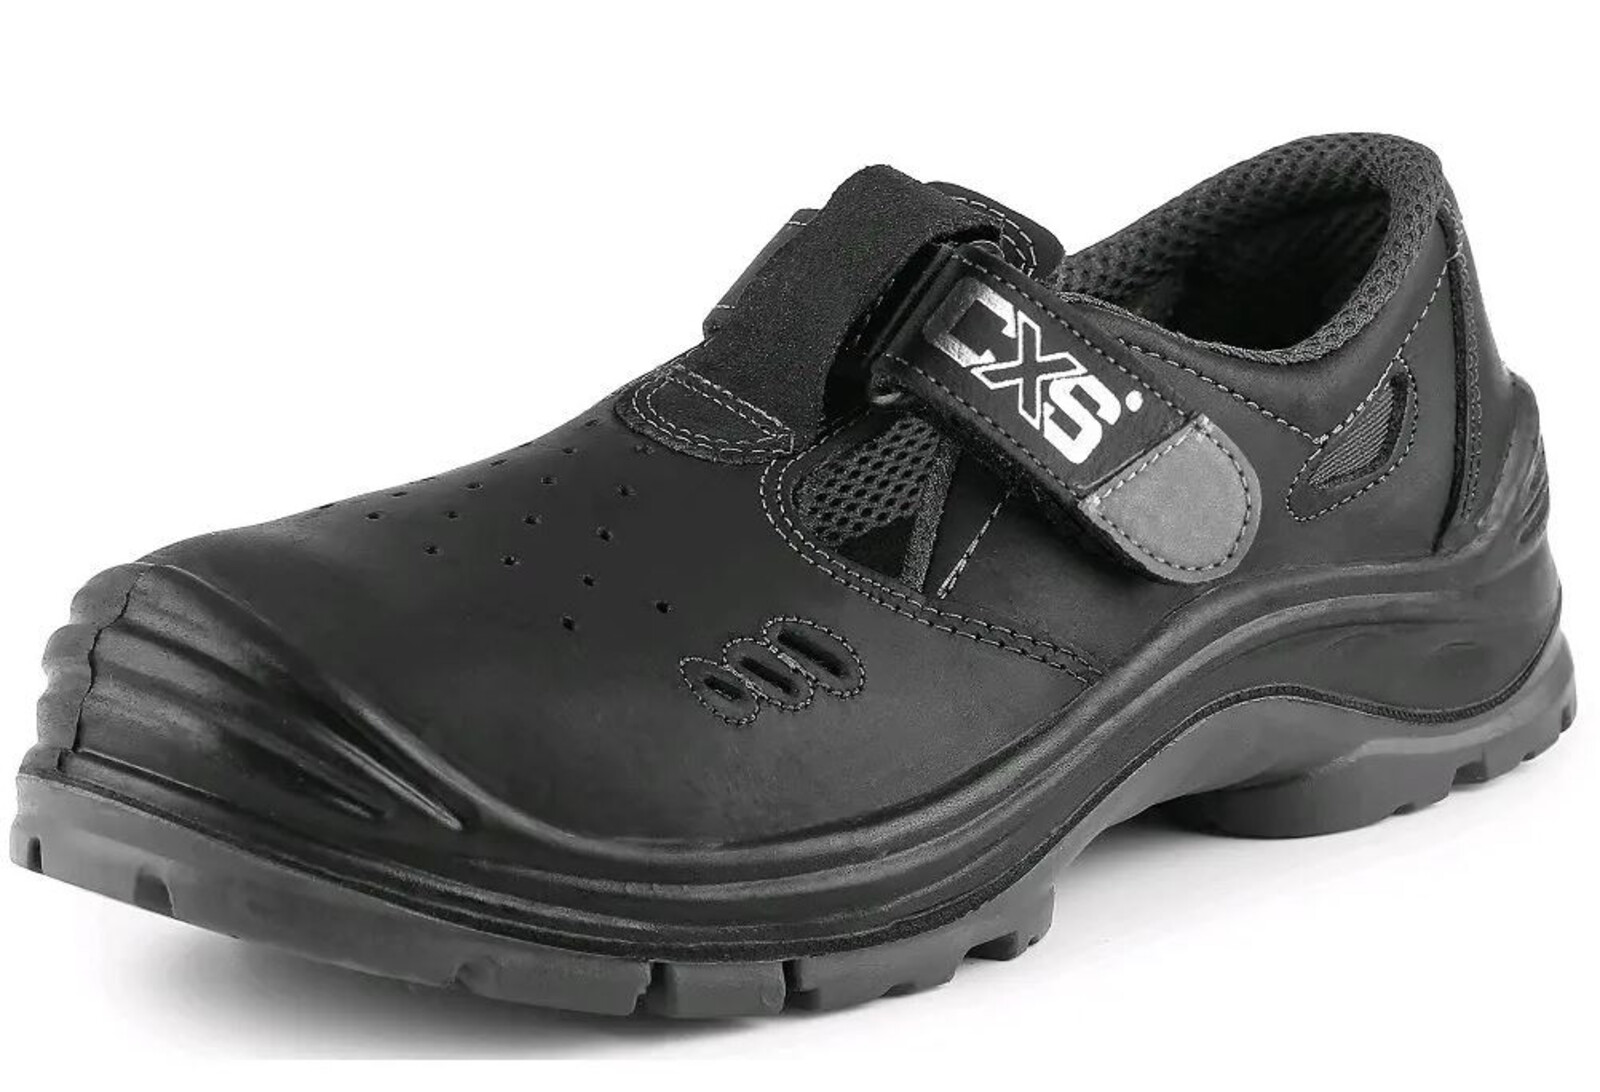 Bezpečnostné sandále CXS Safety Steel Iron S1 - veľkosť: 45, farba: čierna